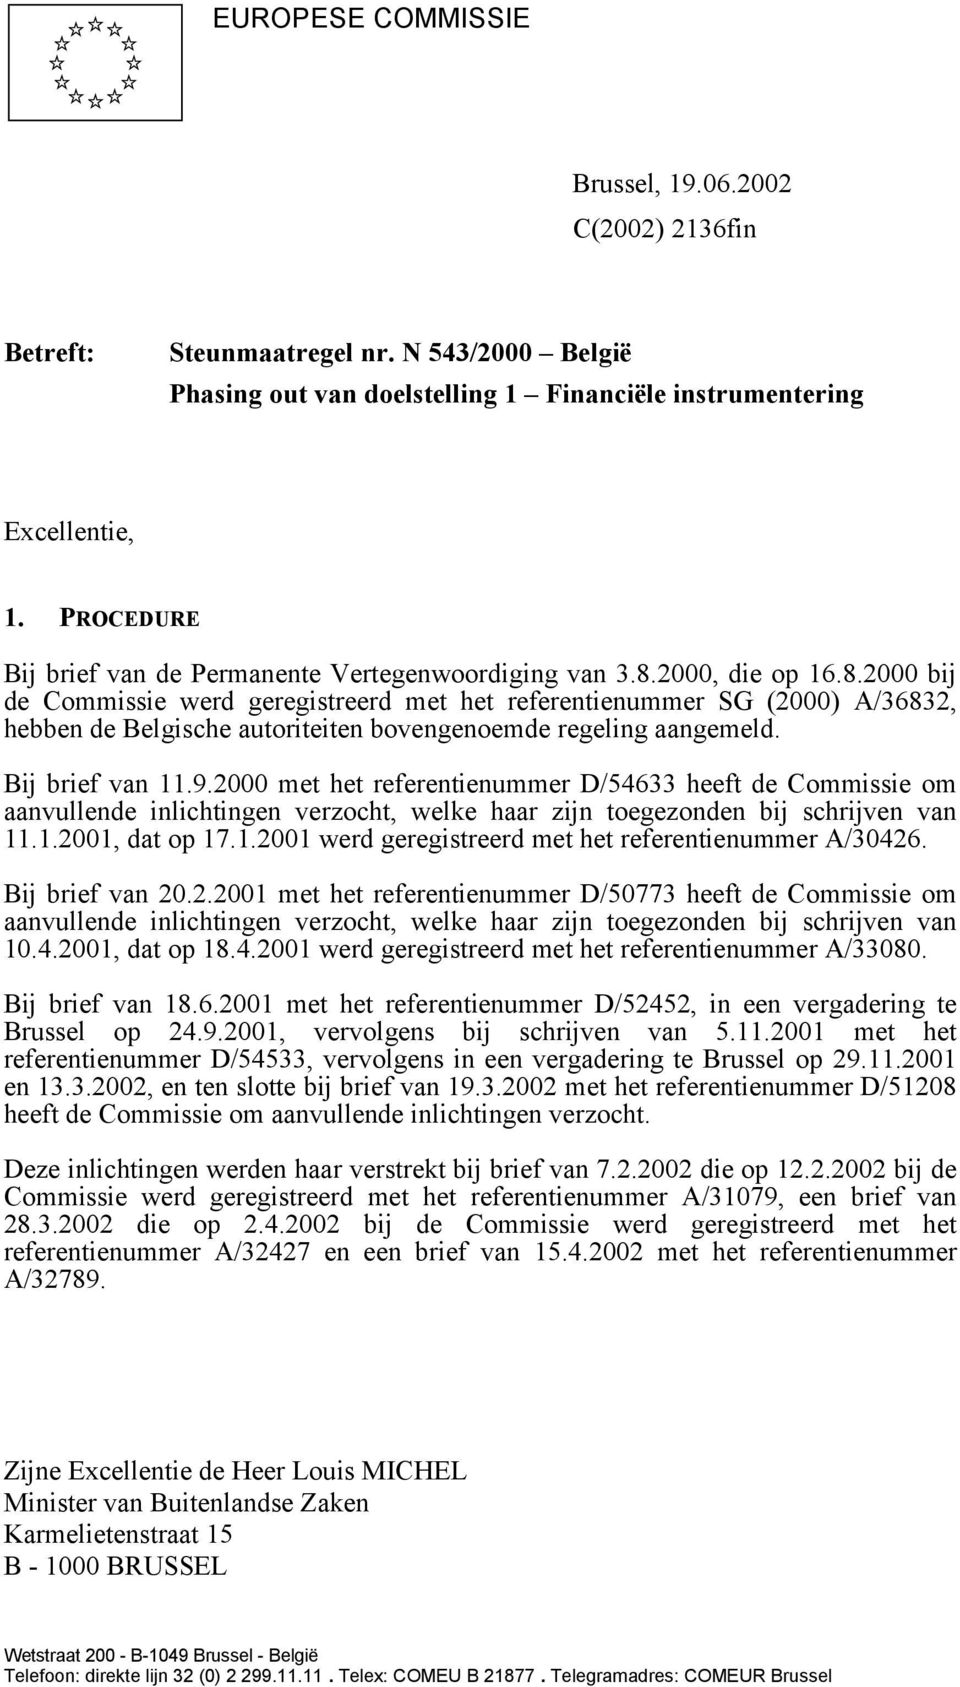 2000, die op 16.8.2000 bij de Commissie werd geregistreerd met het referentienummer SG (2000) A/36832, hebben de Belgische autoriteiten bovengenoemde regeling aangemeld. Bij brief van 11.9.